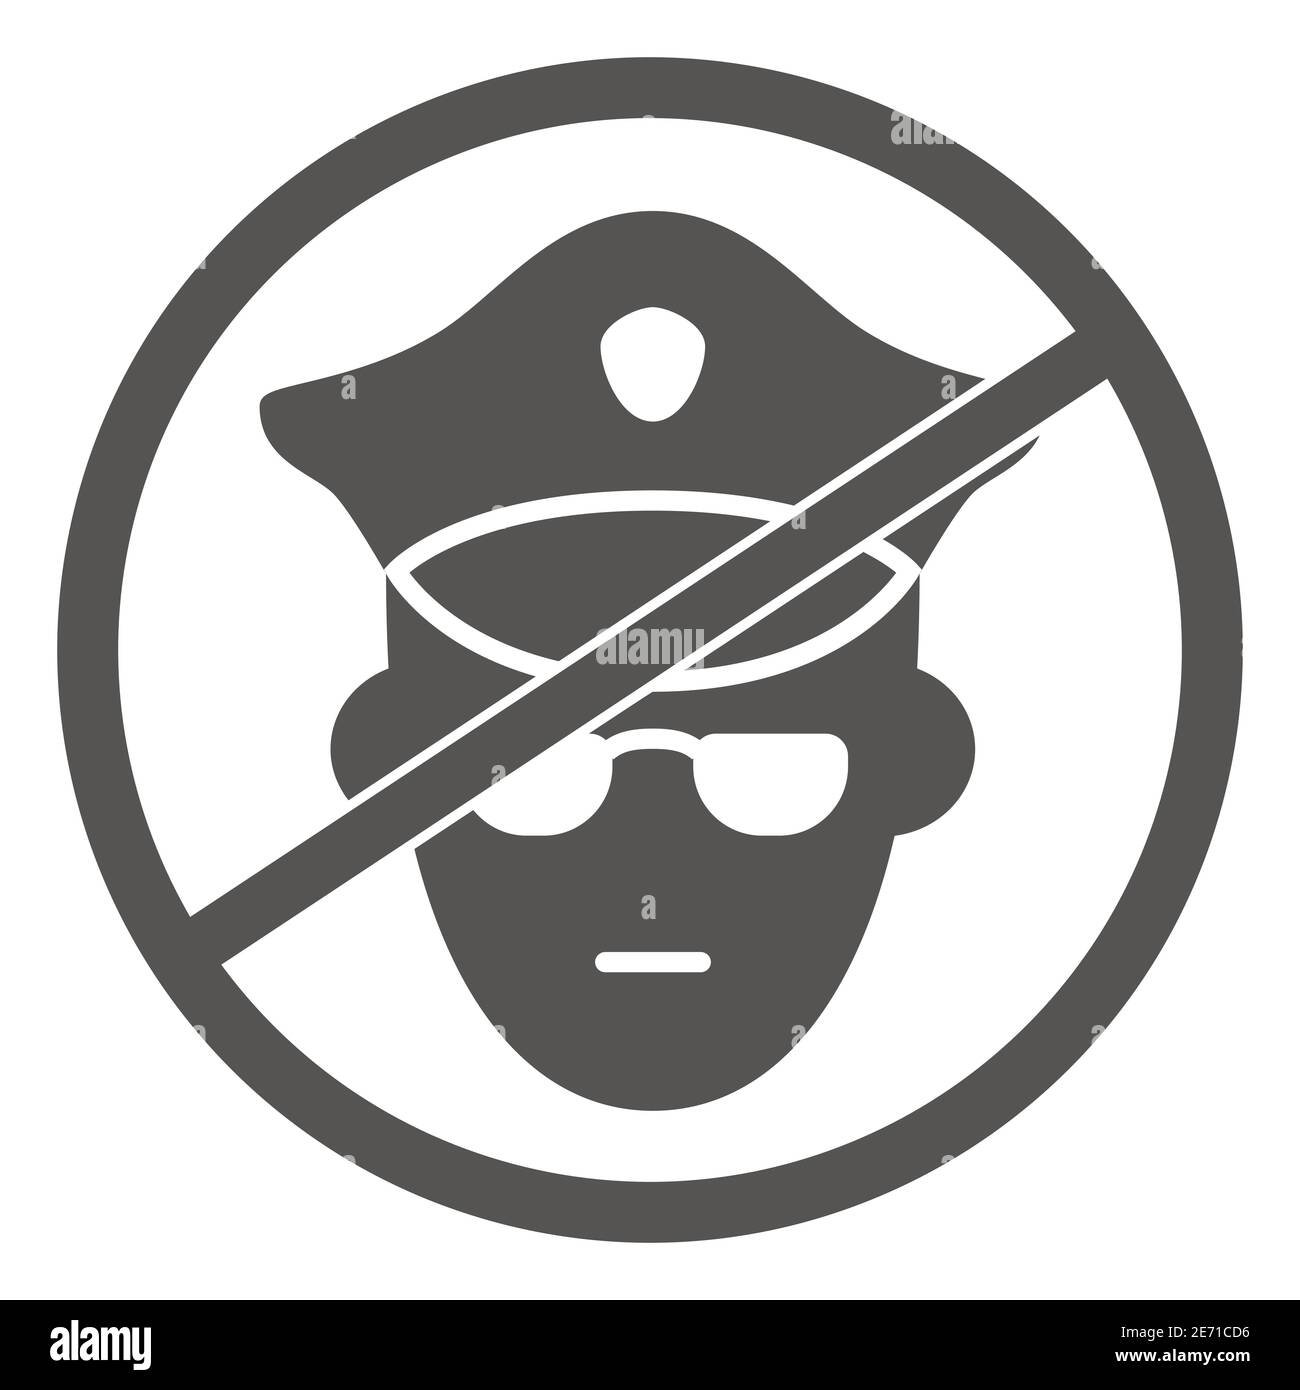 Keine Polizei solide Symbol, Black Lives Materie Konzept, Protest-Symbol über das Menschenrecht der schwarzen Menschen Zeichen auf weißem Hintergrund, kein Militär-Offizier-Symbol Stock Vektor